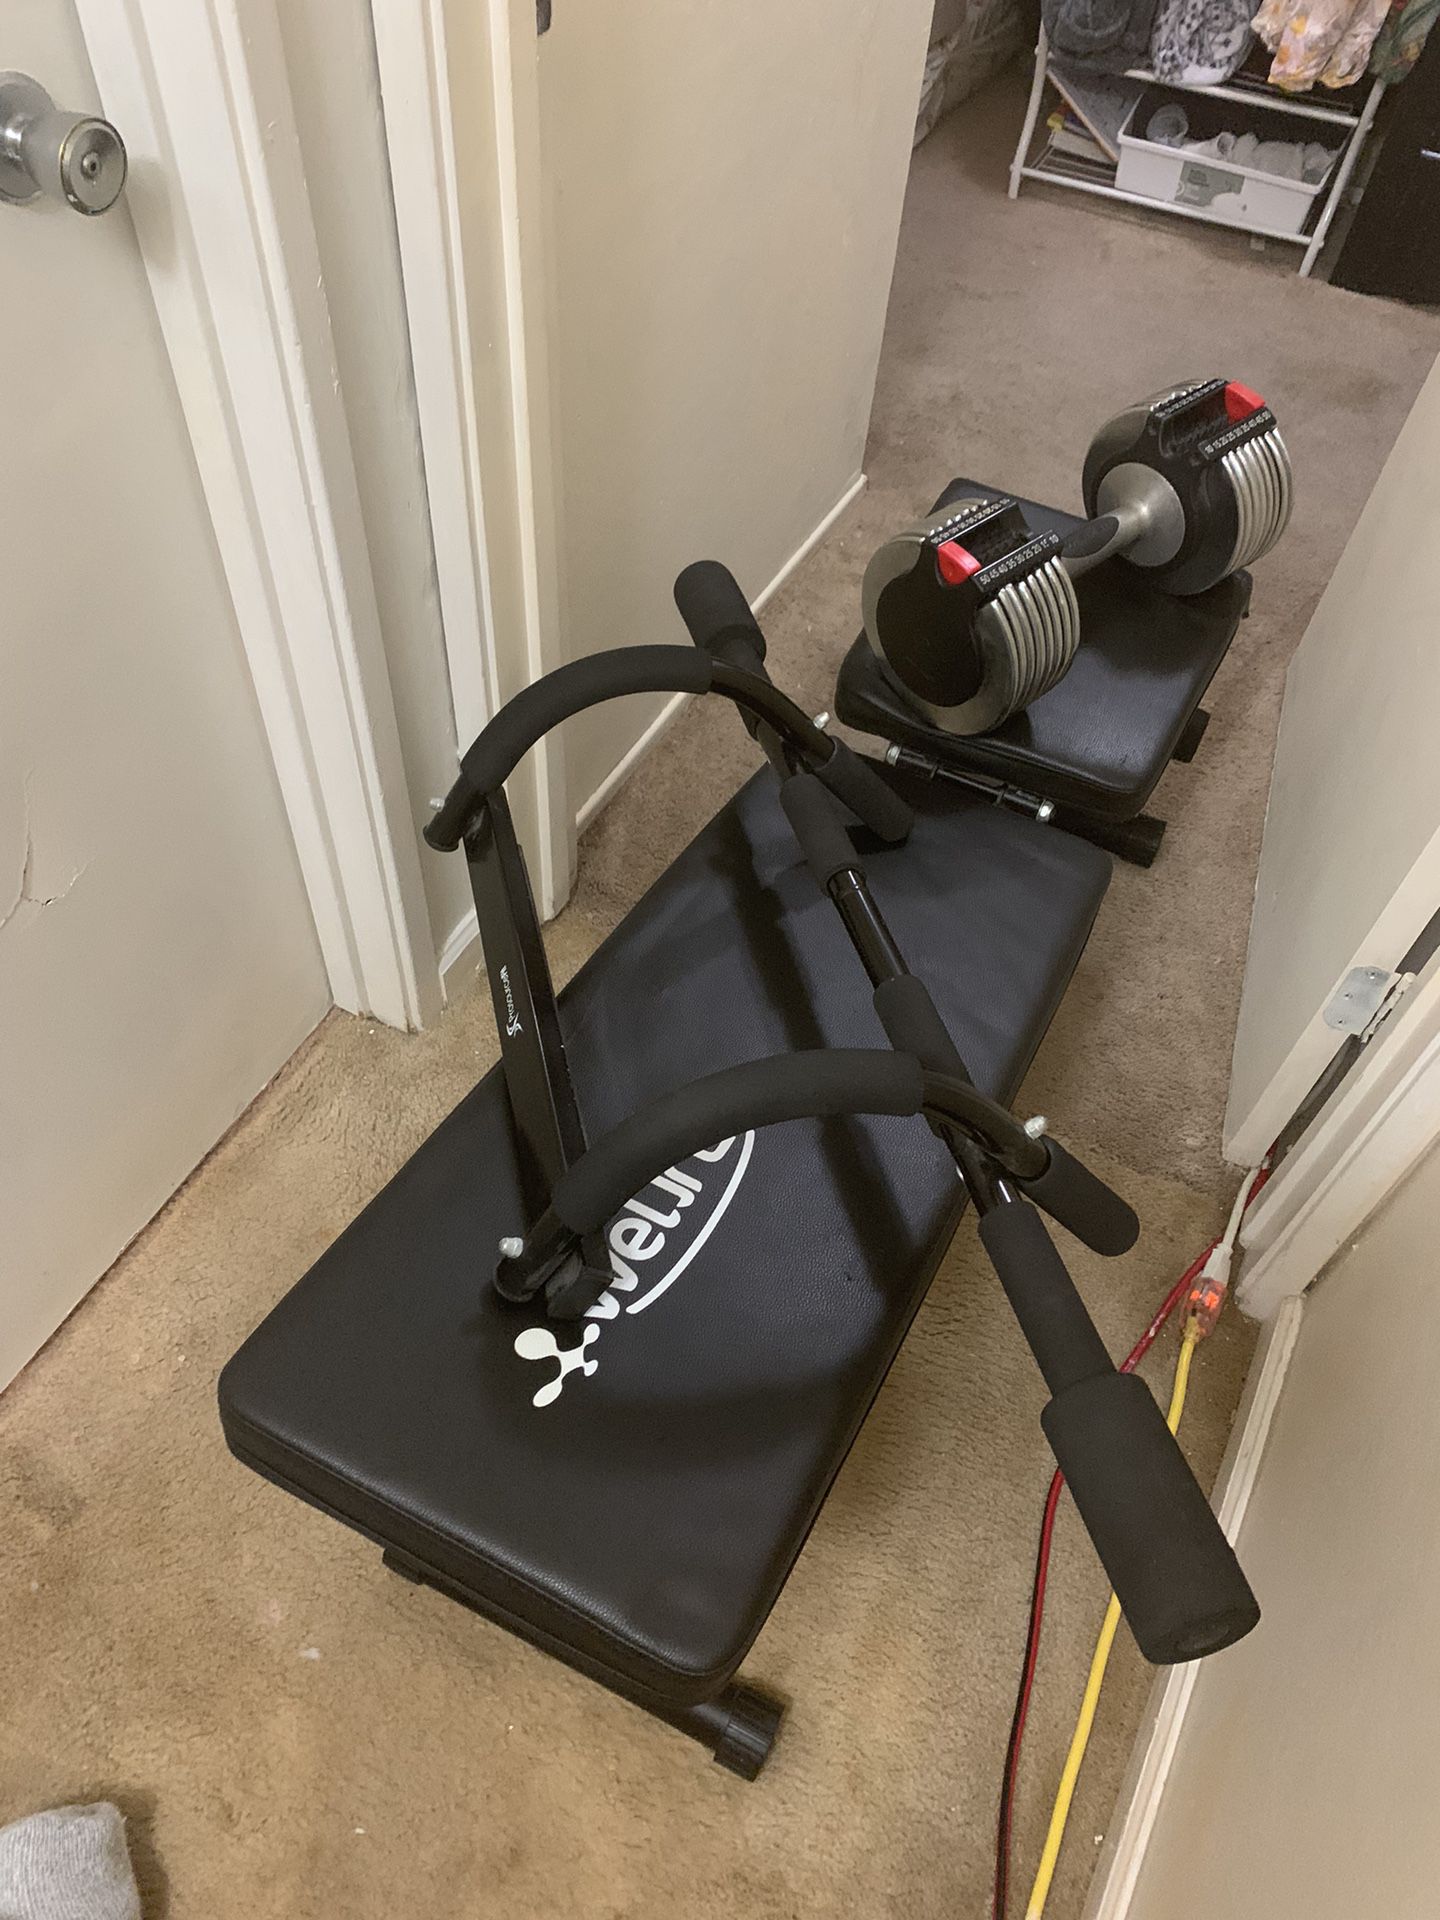 3pc Home Gym Setup (Bench, Adjustable Dumbell, Pull-up Bar)